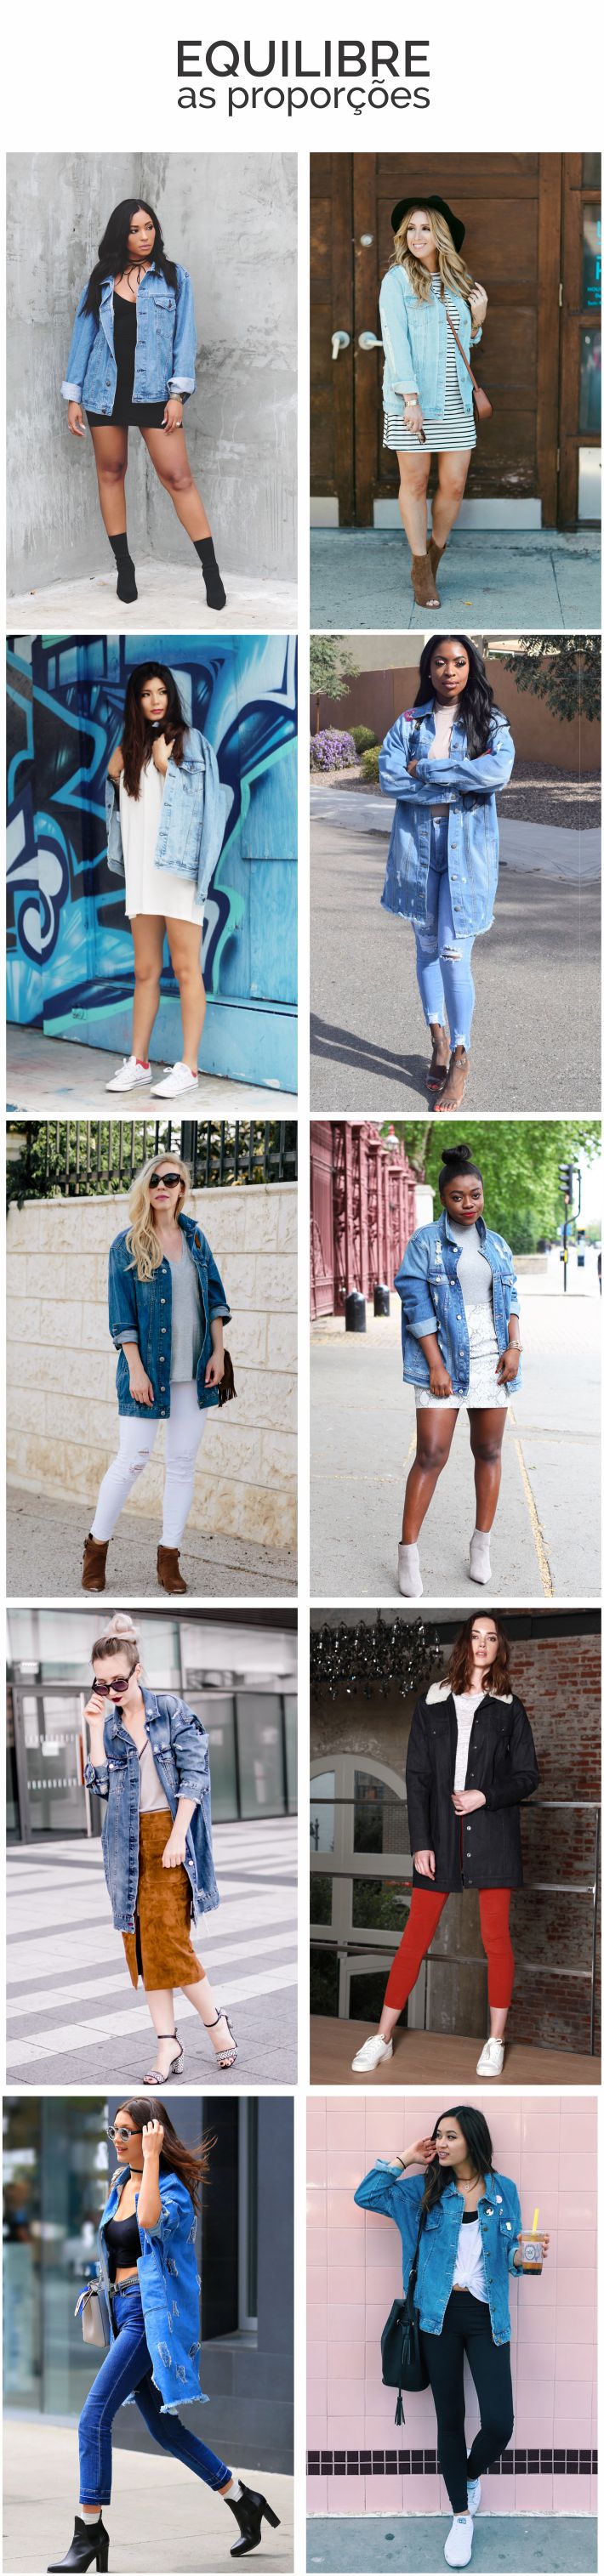 Como usar jaqueta jeans oversized - Por Layla Monteiro